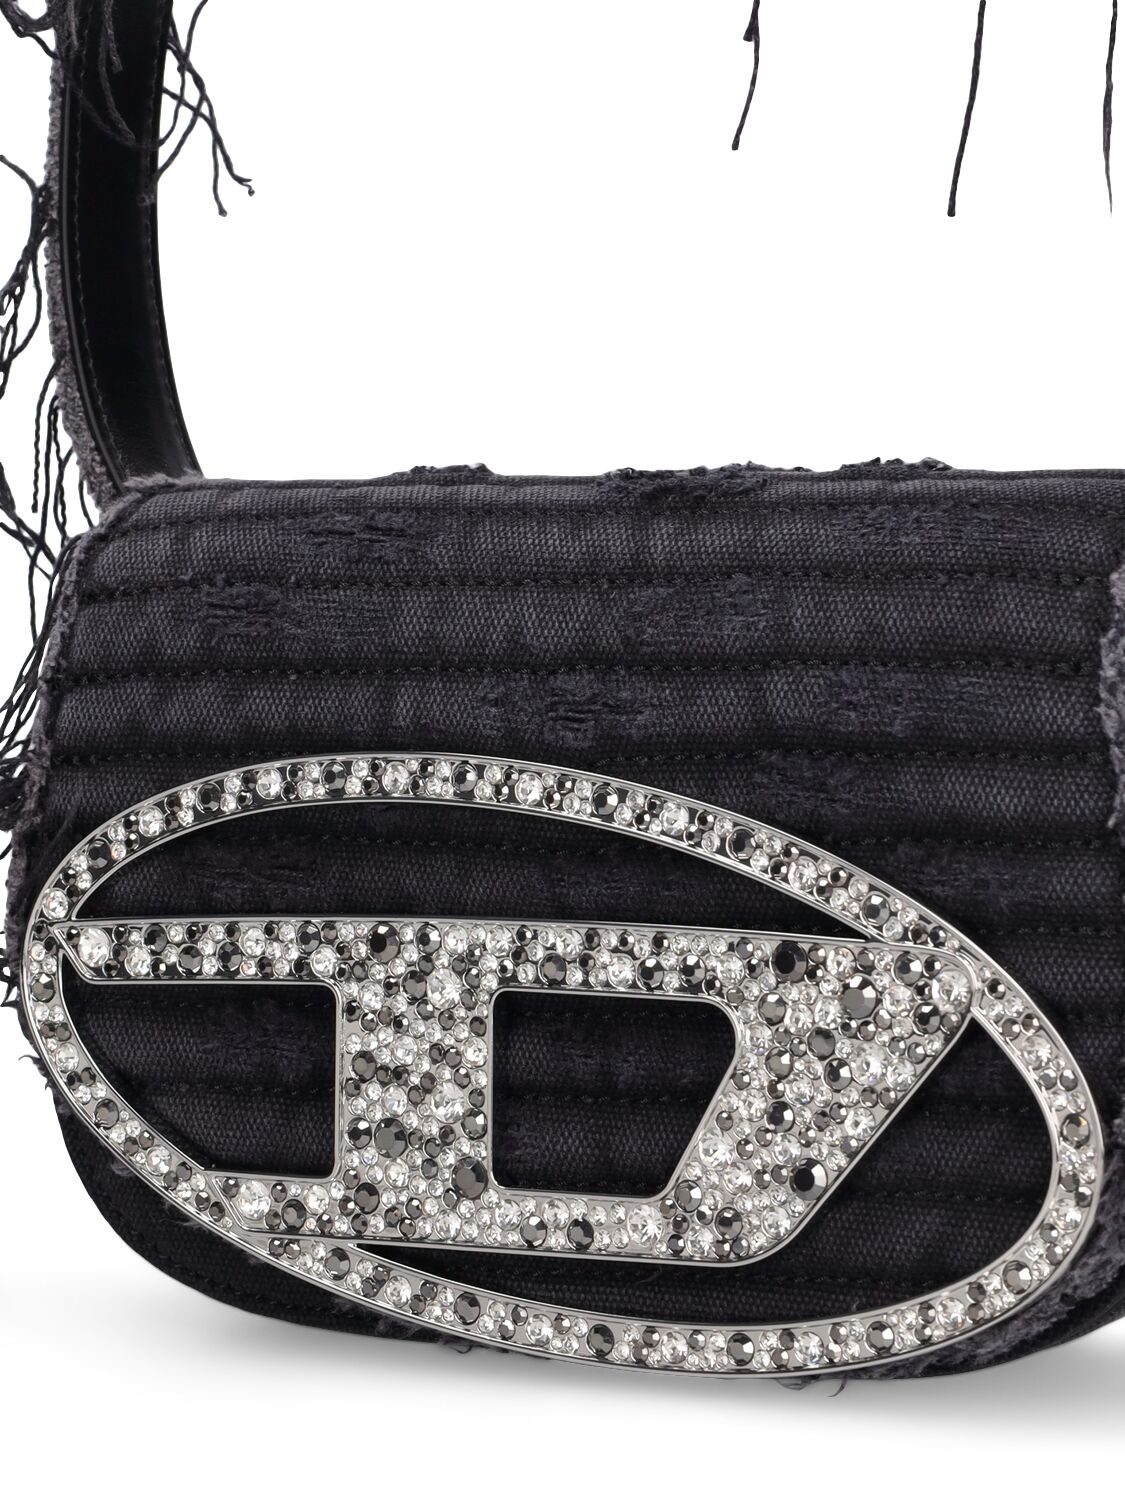 Shop Diesel 1dr Leather Bag In Black,silver